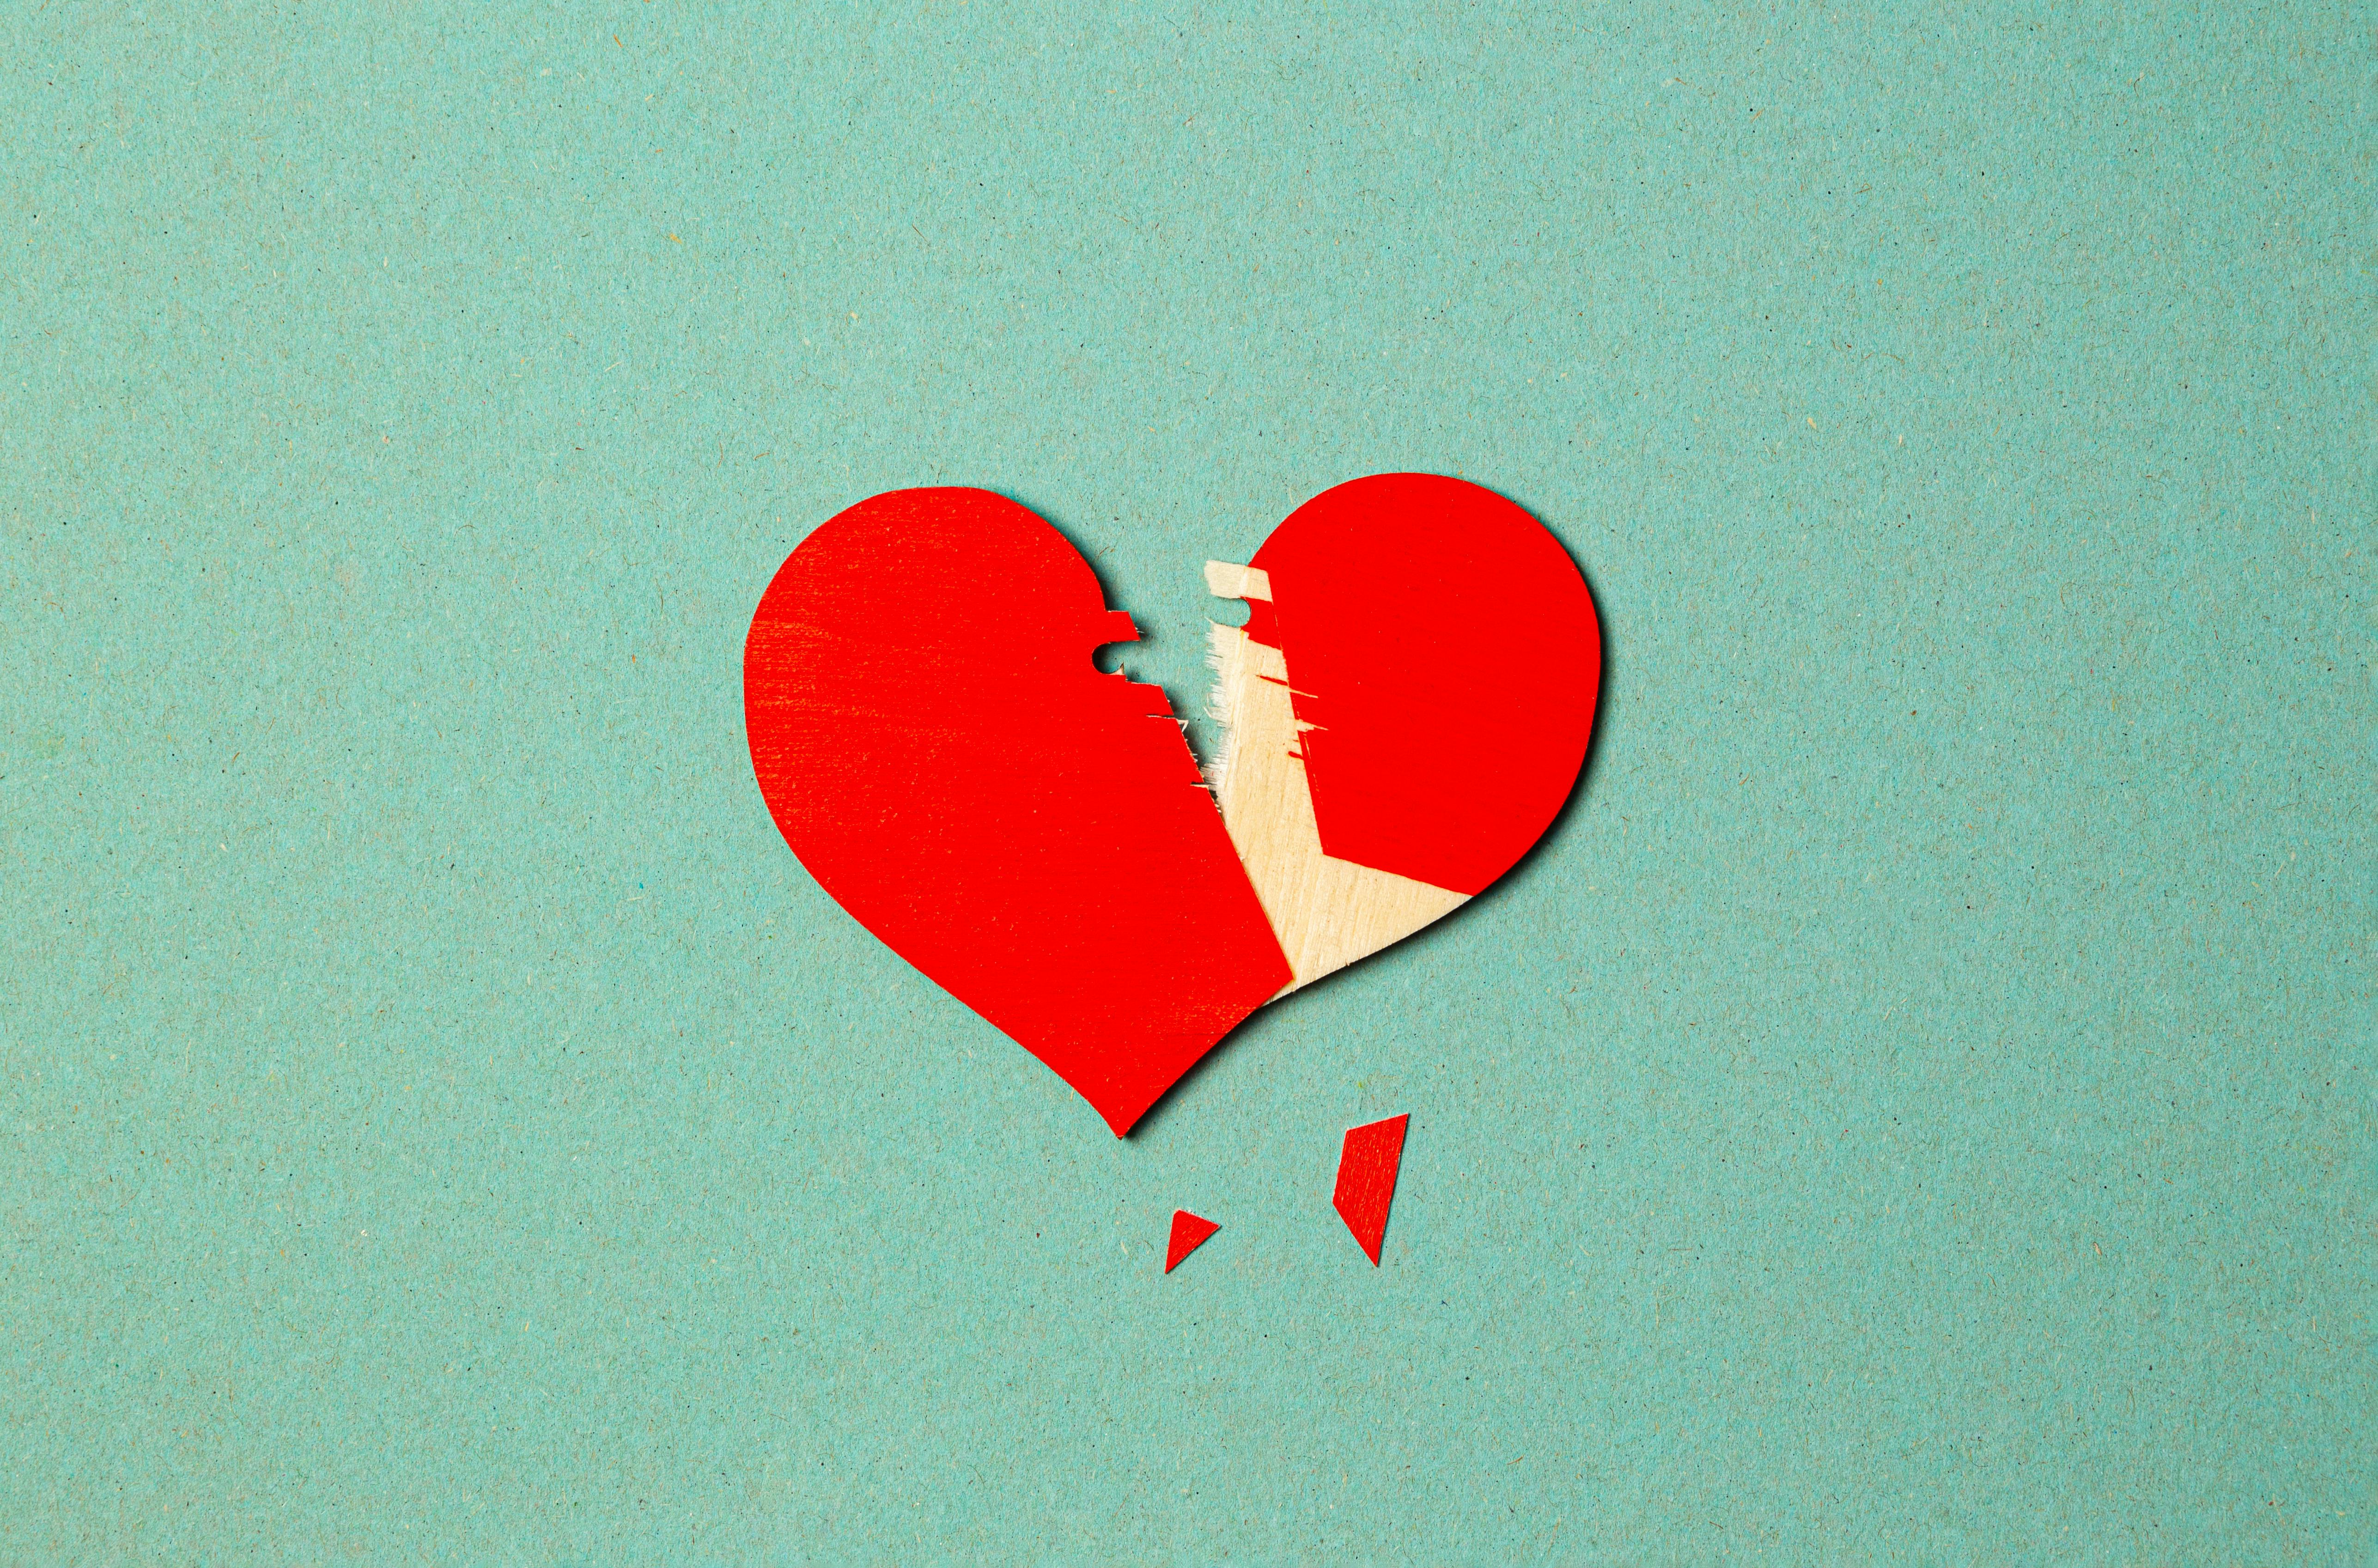 wallpaper broken heart